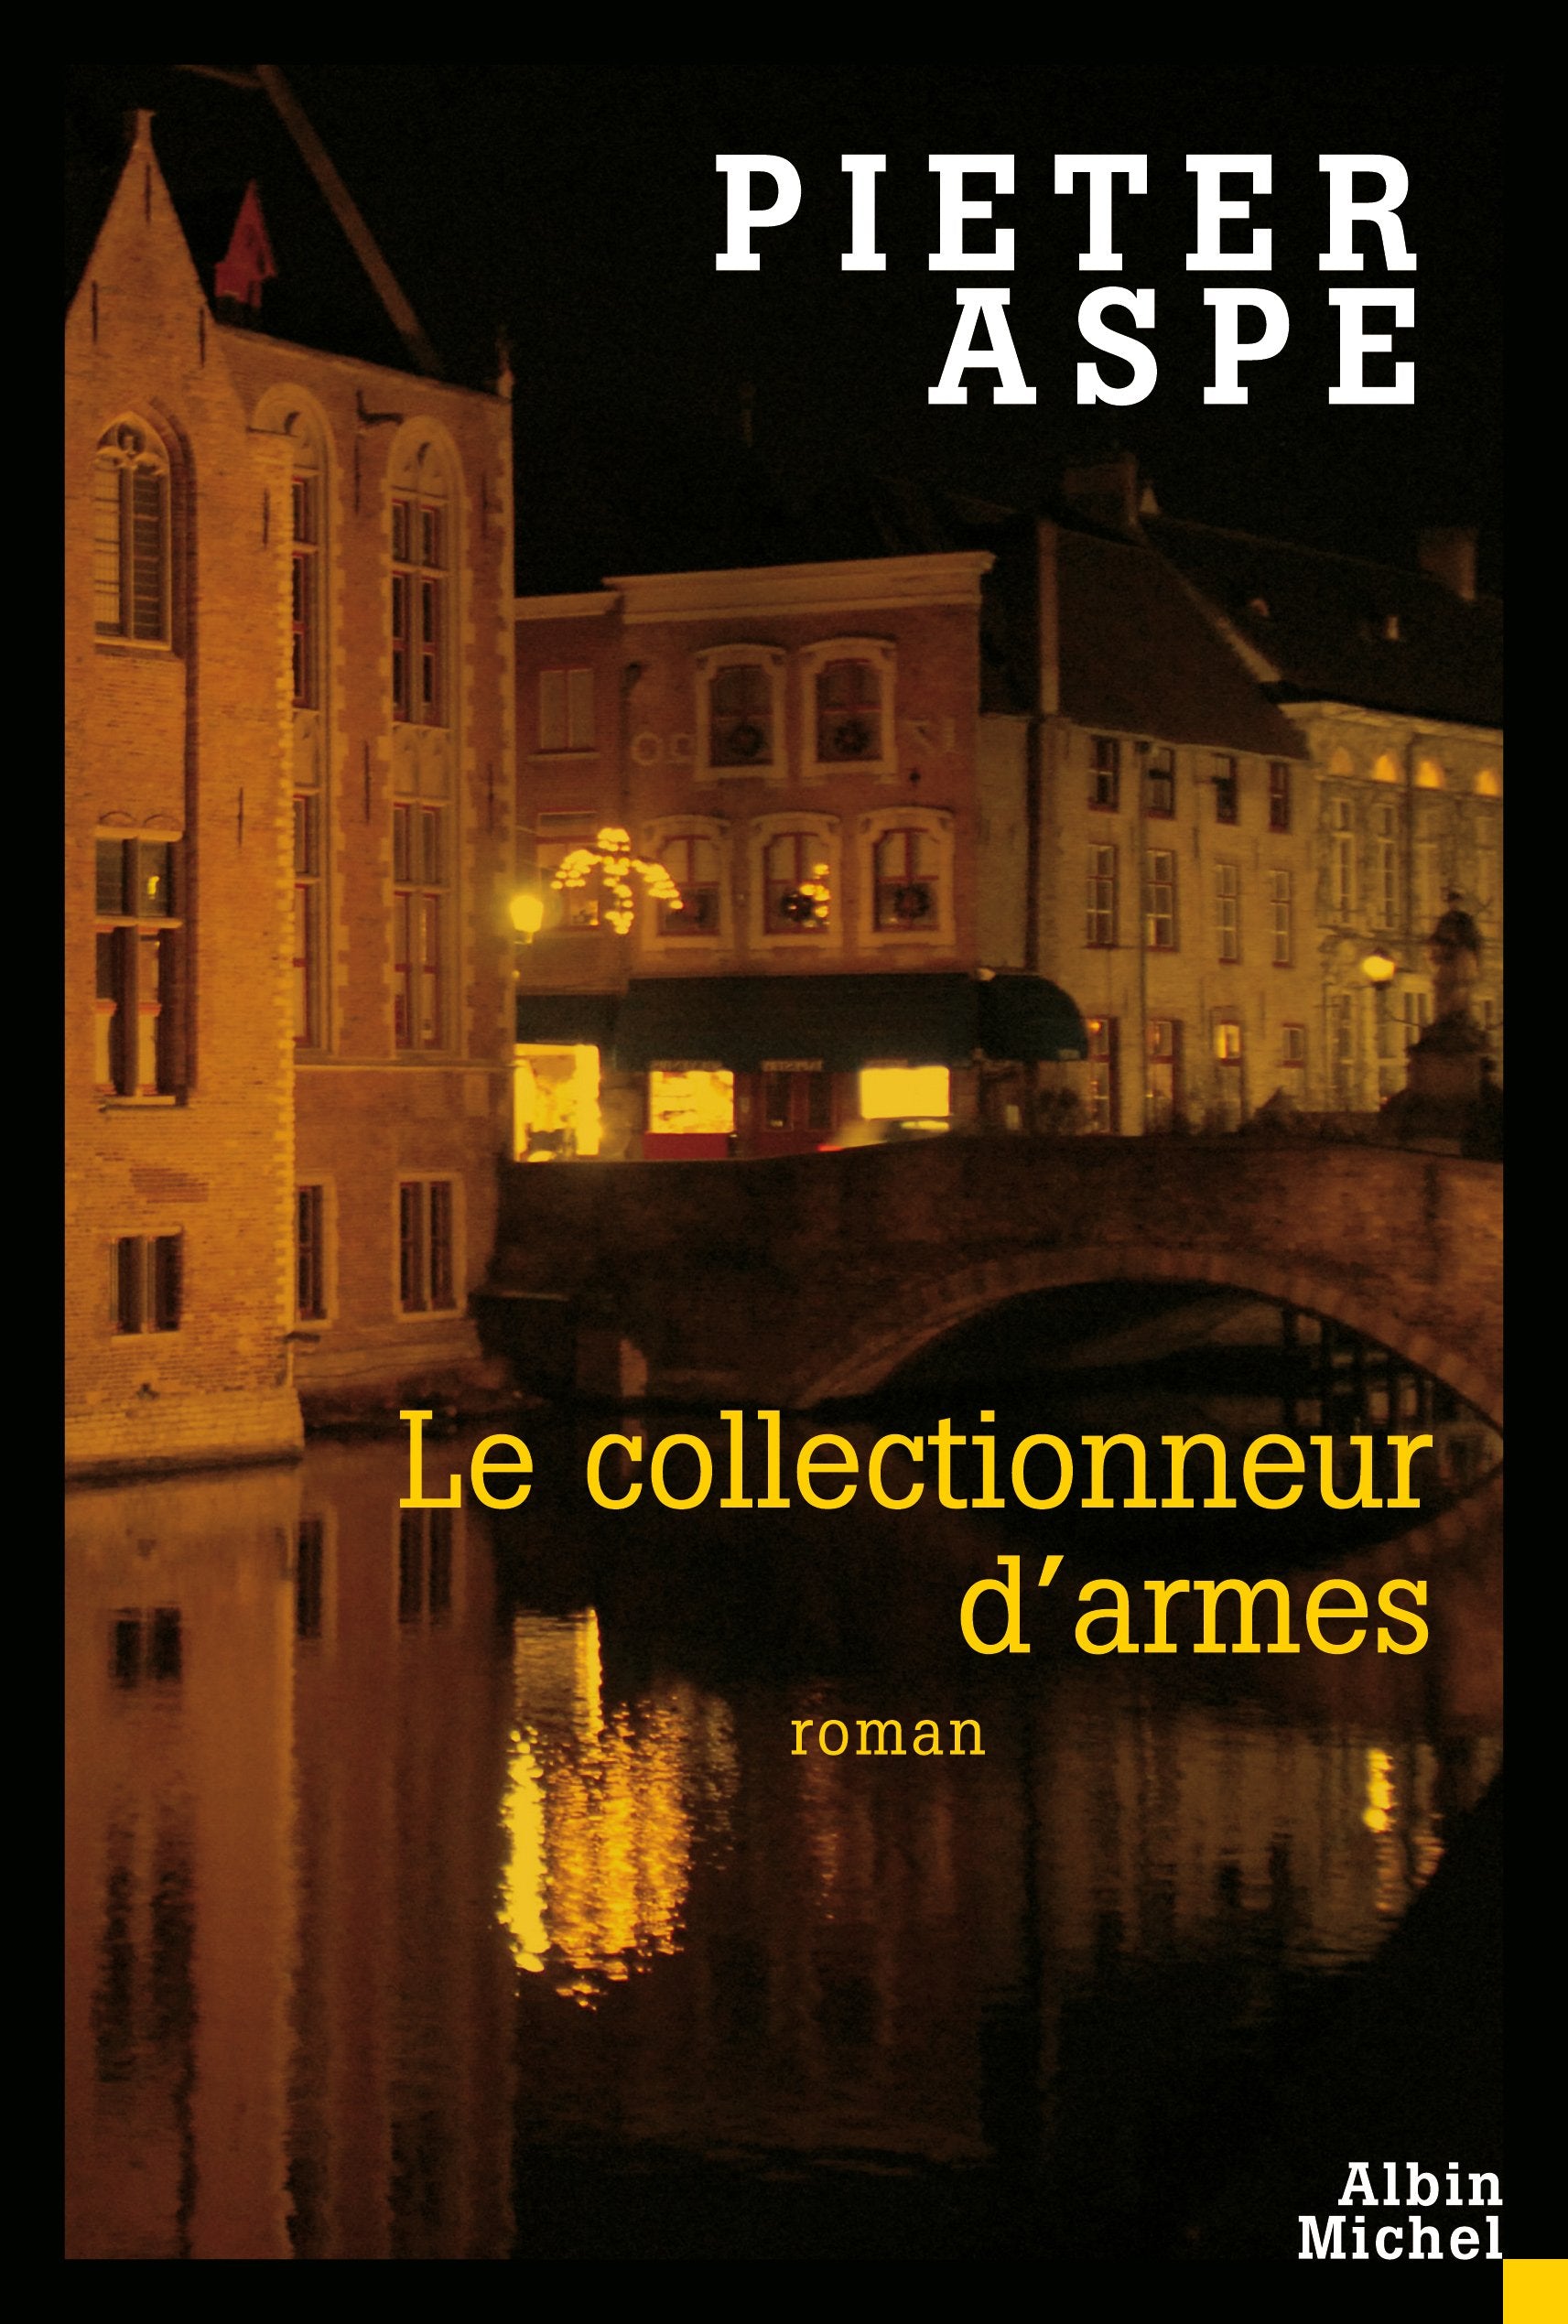 Livre ISBN 2226194185 Le collectionneur d'armes (Pierter Aspe)